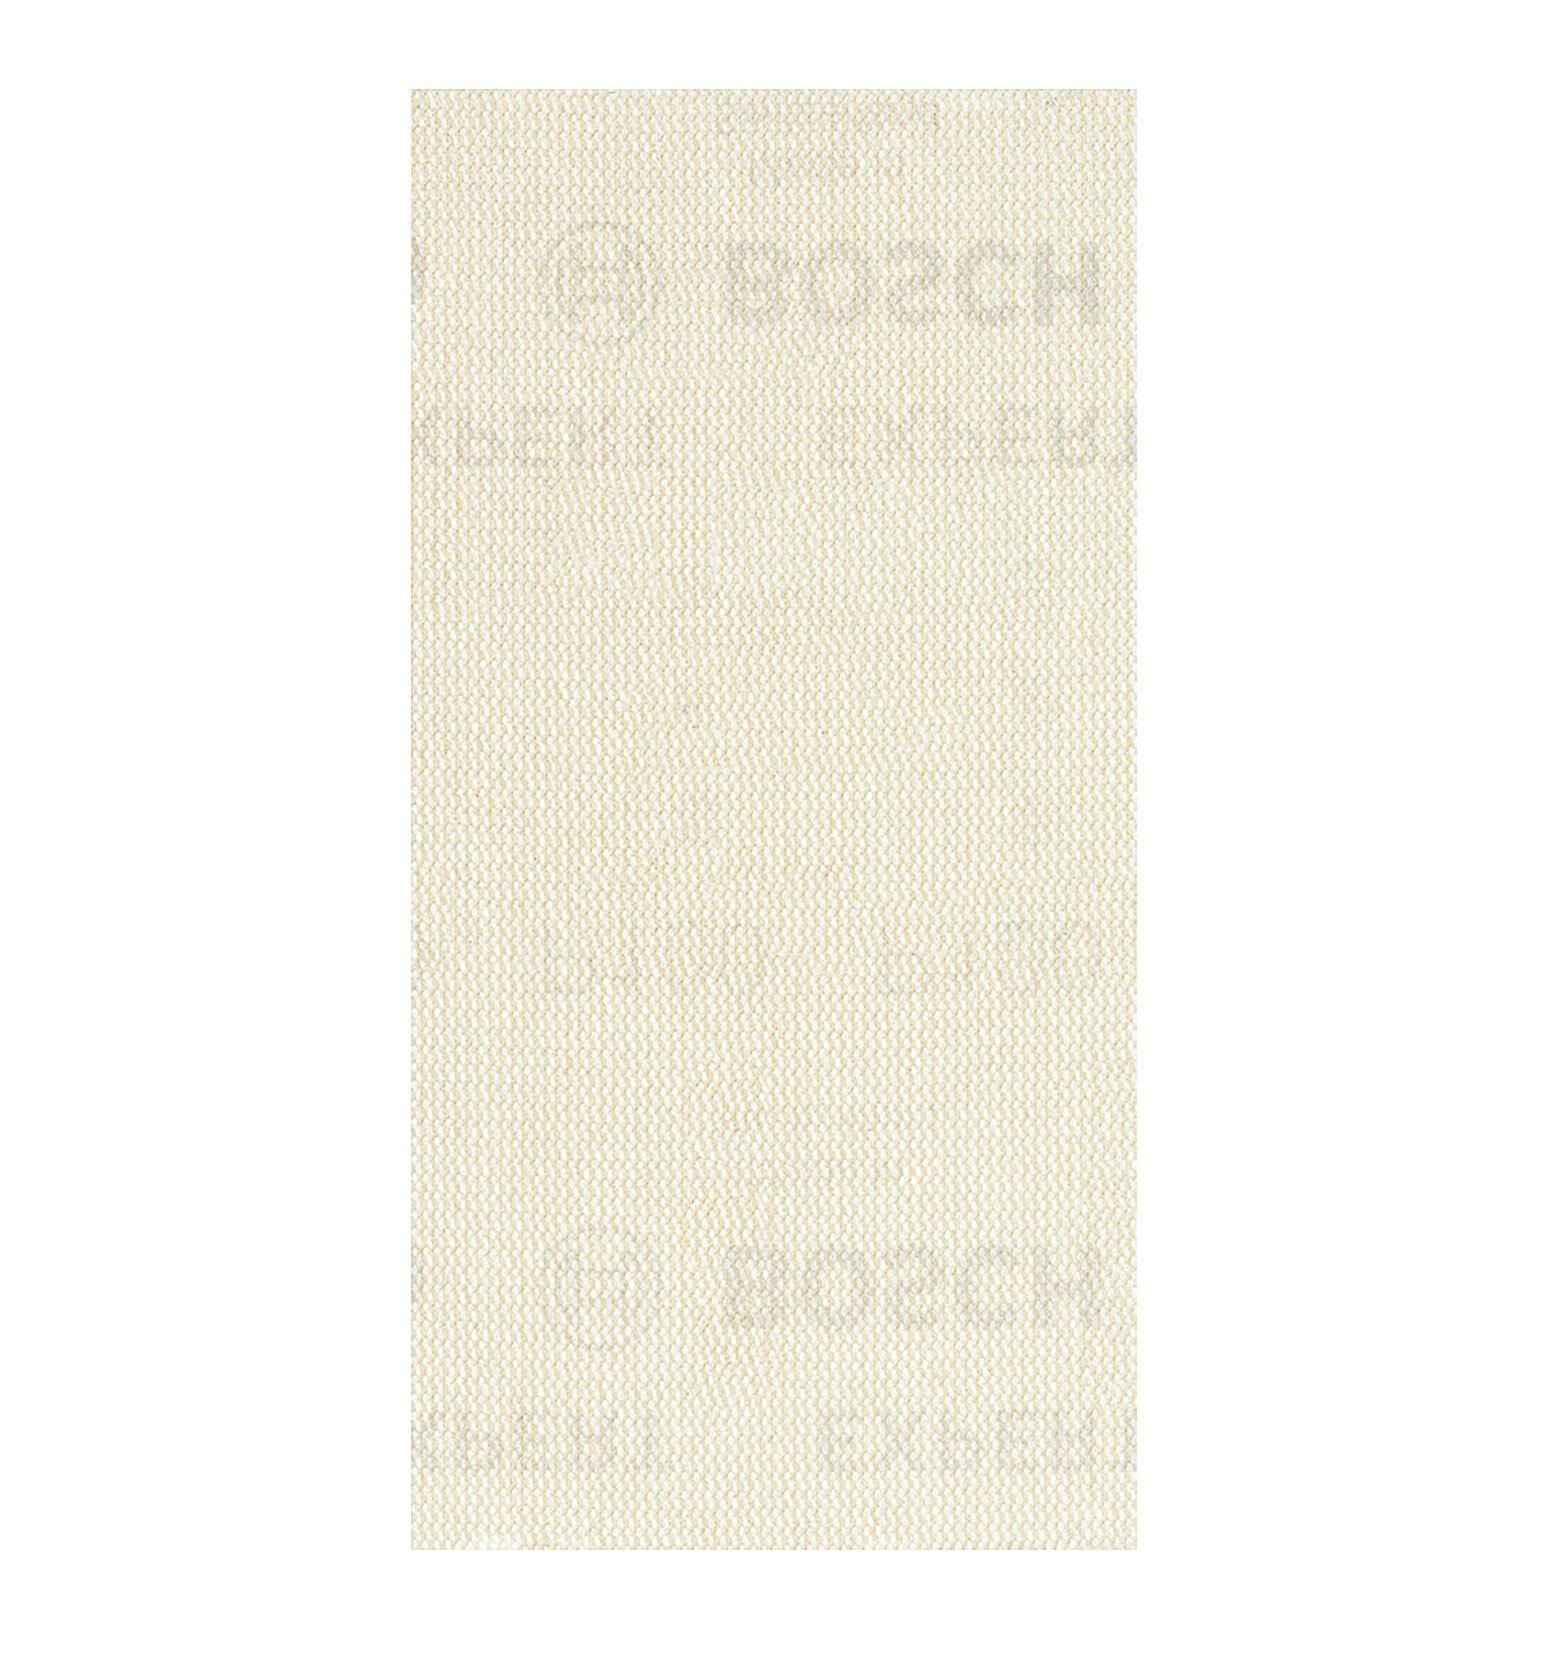 Bosch M480 93x186 mm 100 kum Elek Telli Ağ Zımpara 2608900753